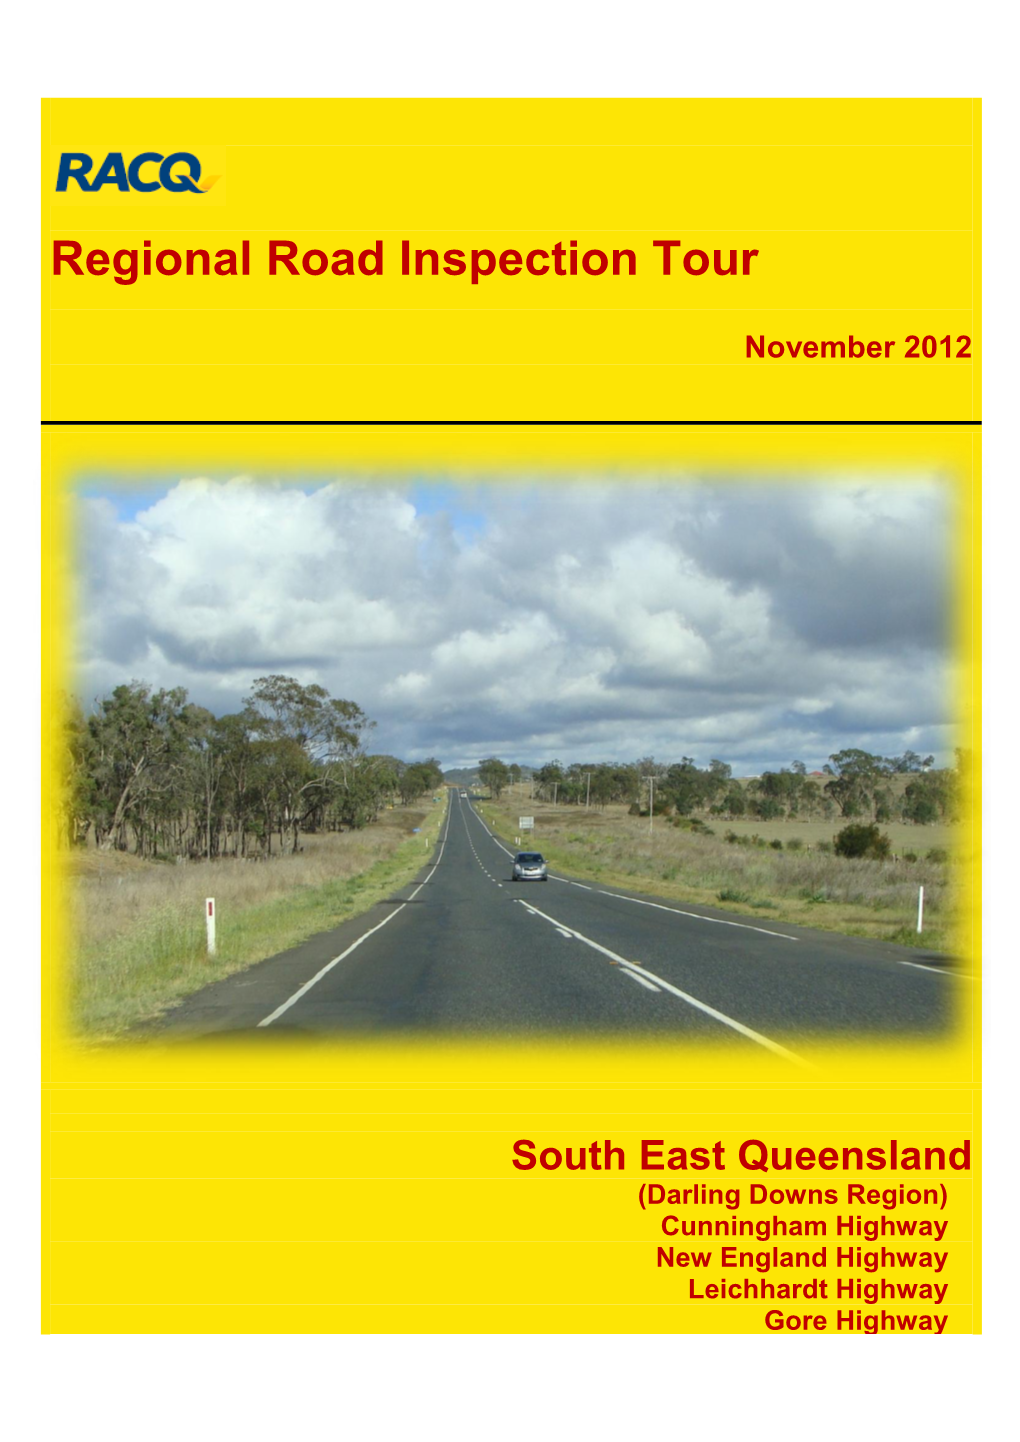 RACQ Regional Road Inspection Tour 2012